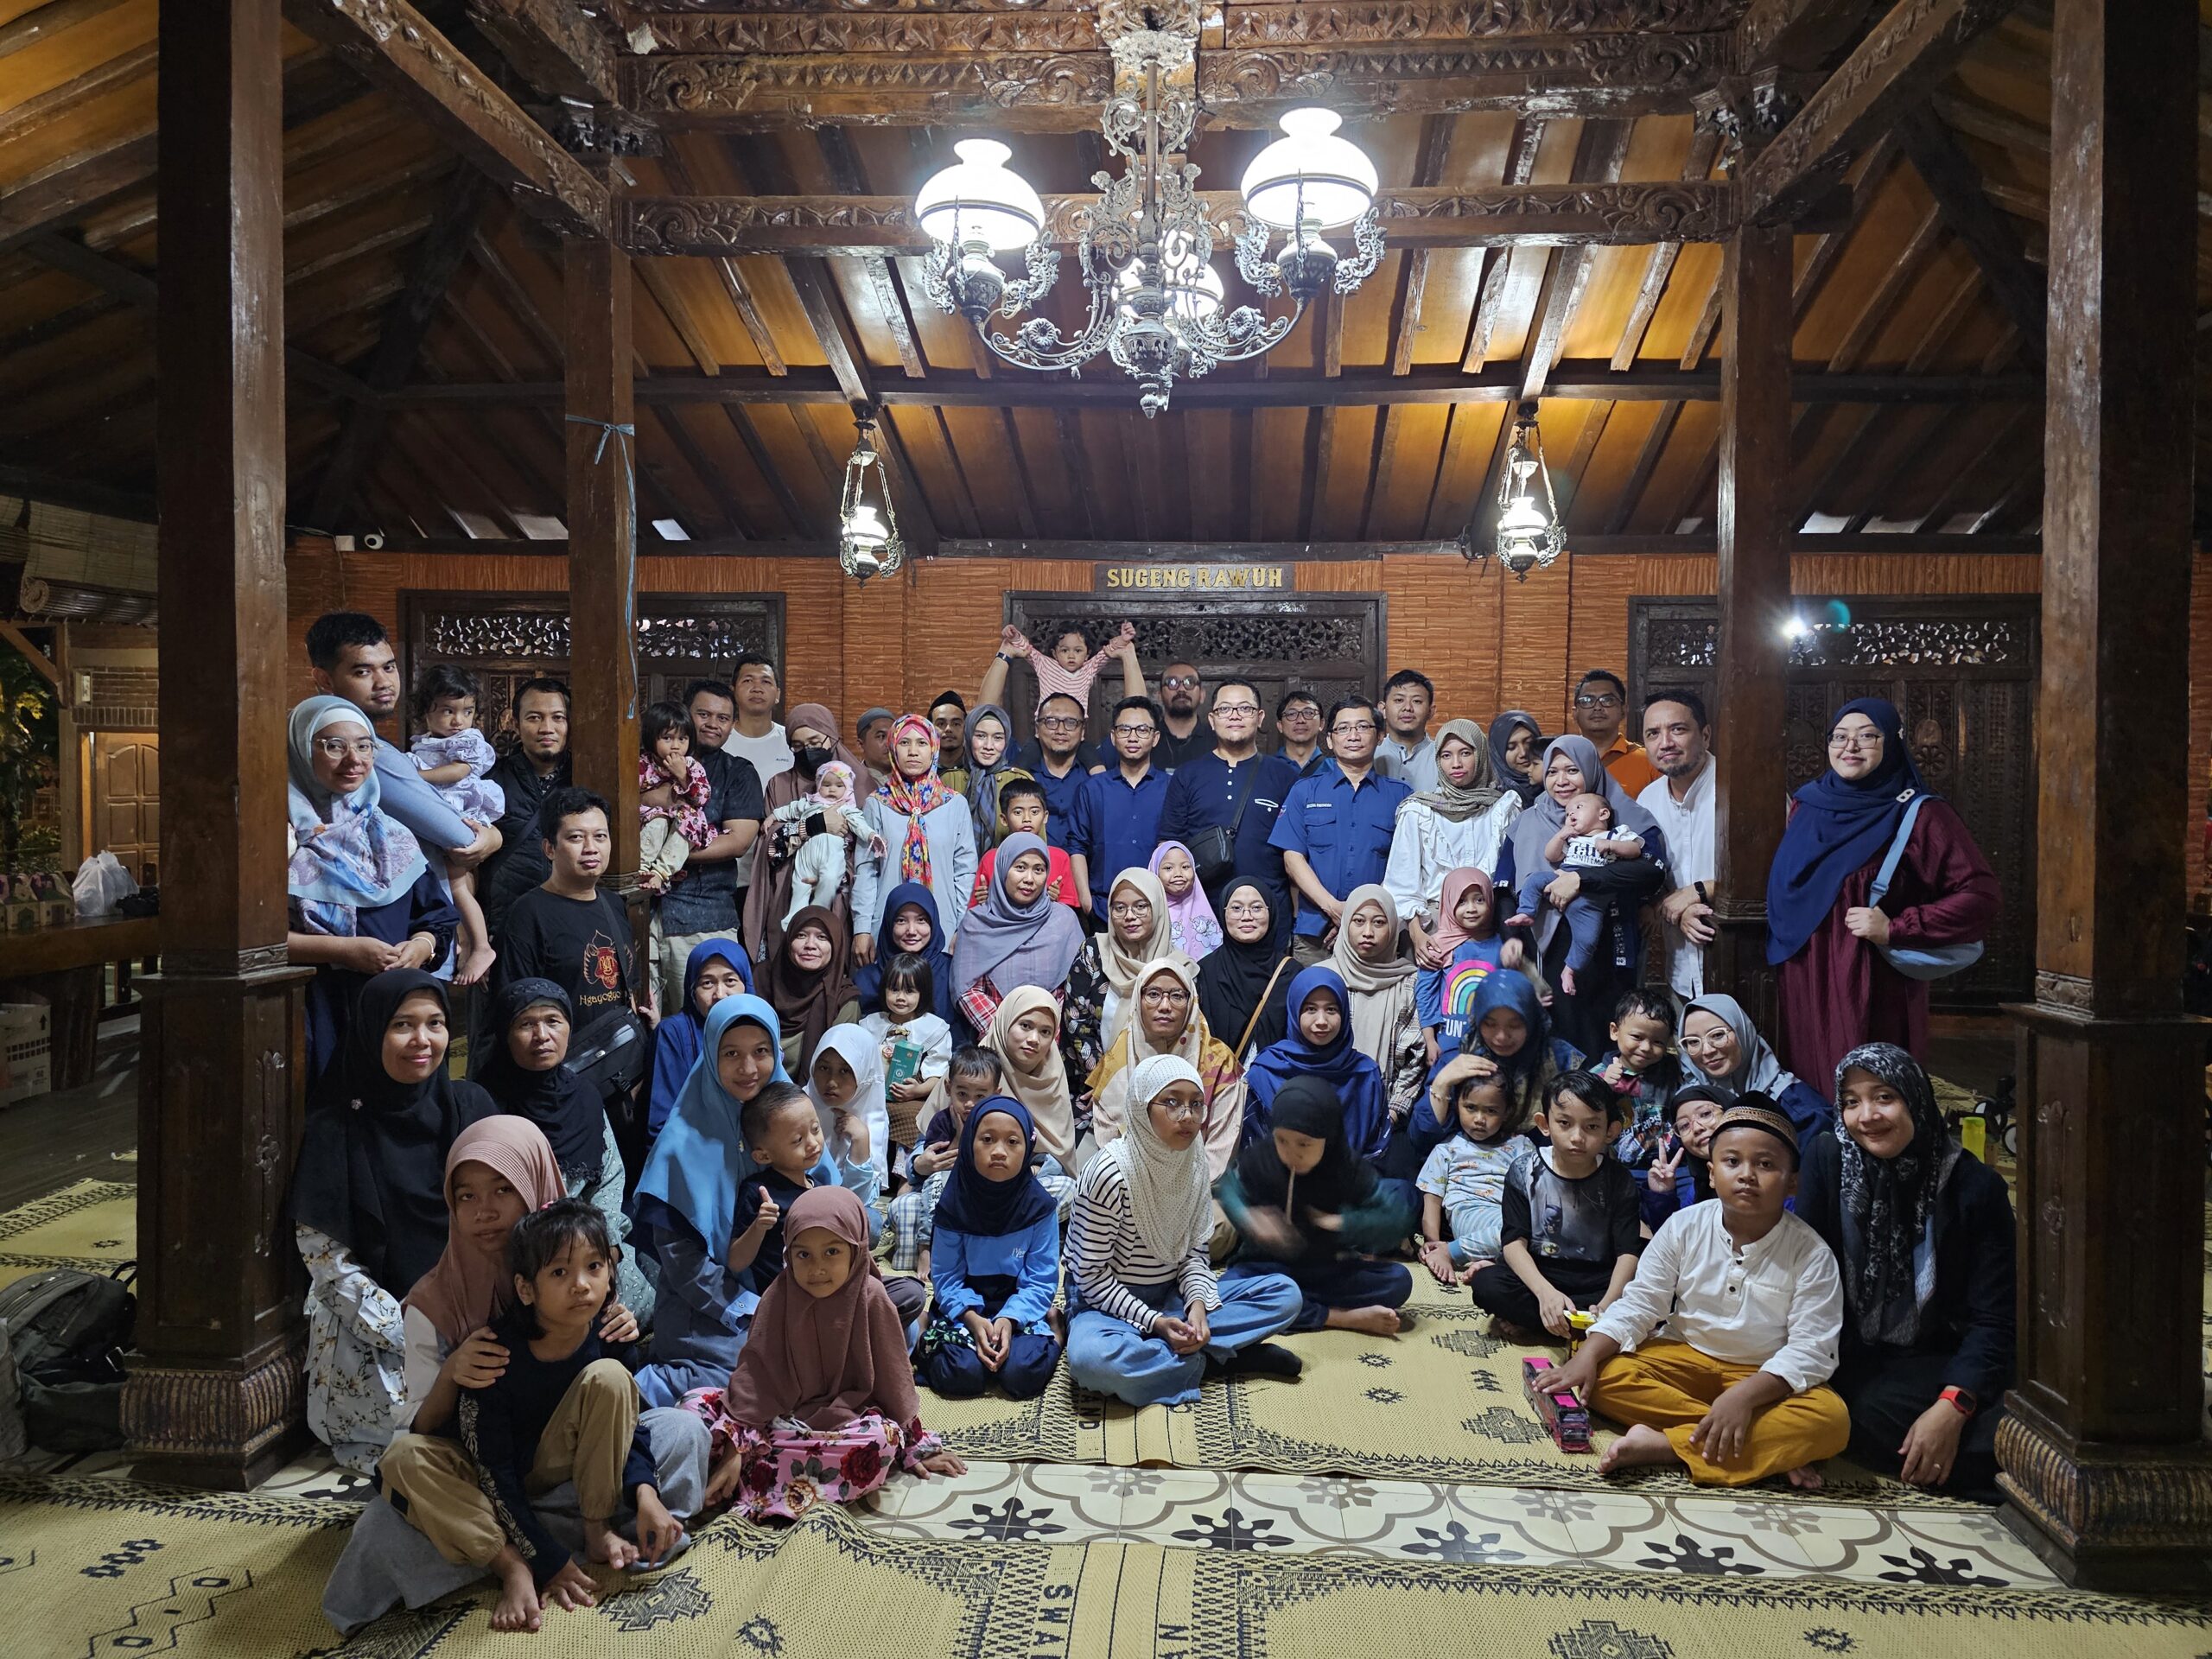 Acara Buka Puasa Bersama Ramadhan 1445 H Keluarga Besar Fakultas Sains dan Teknologi Universitas ‘Aisyiyah Yogyakarta